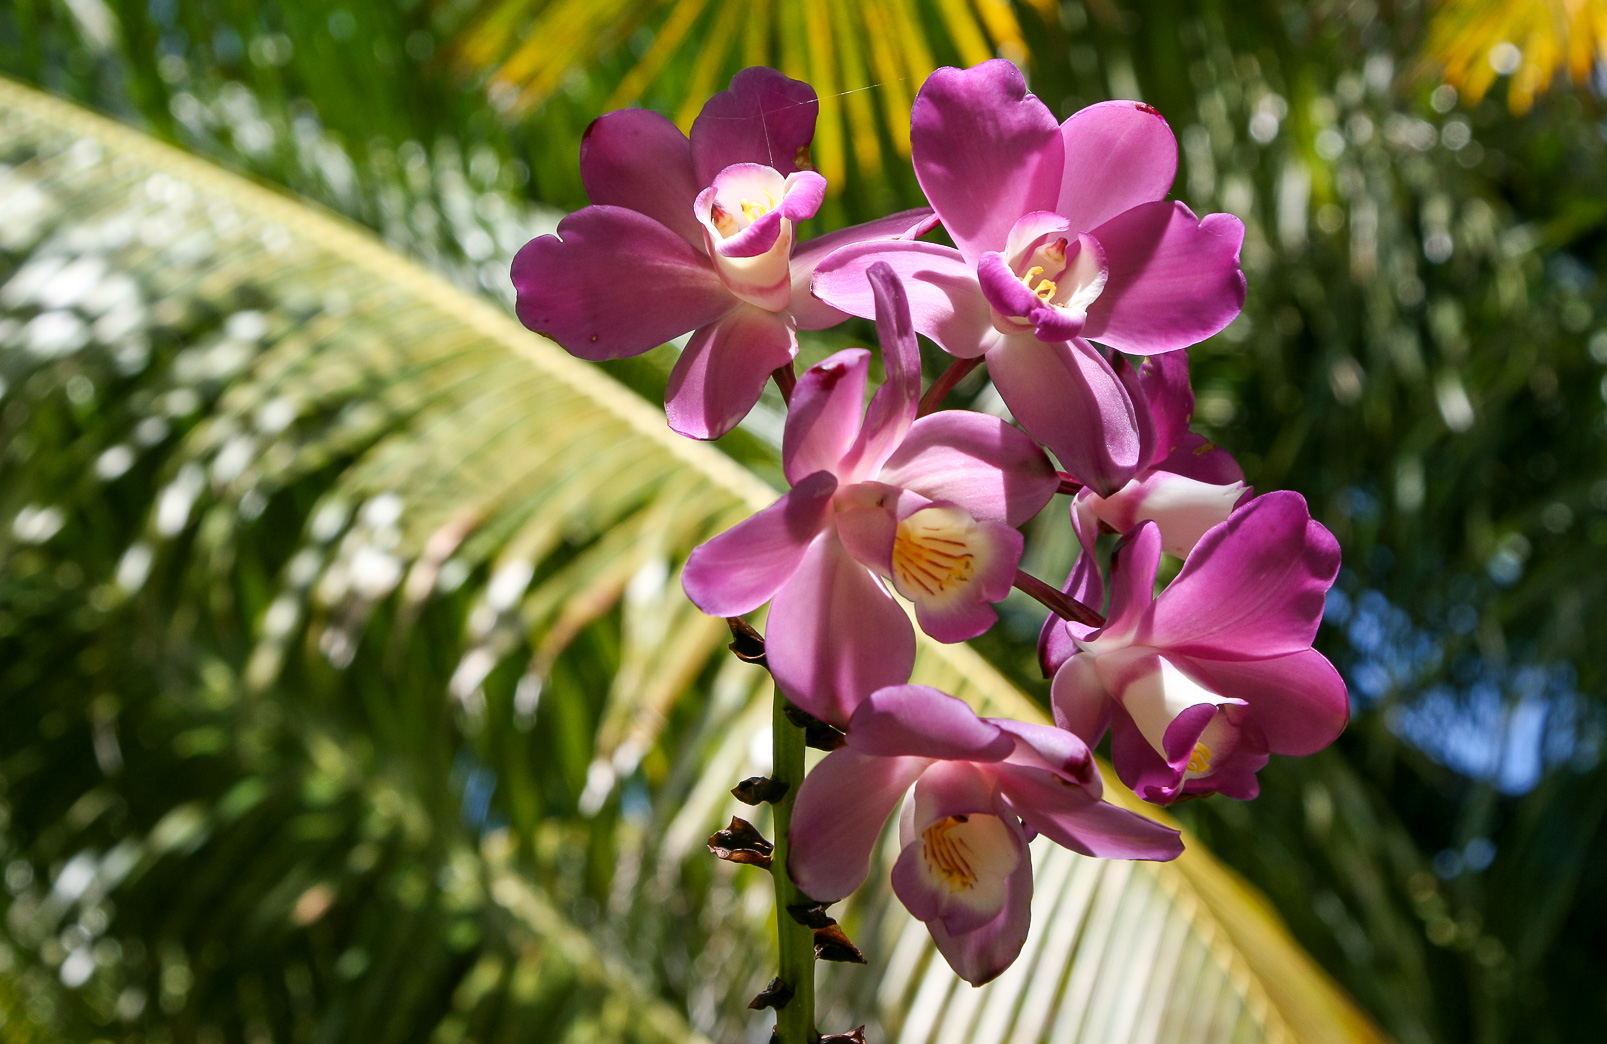 Eulophiella roempleriana, orchidée endémique de cette île et surnomée la "reine des orchidées".